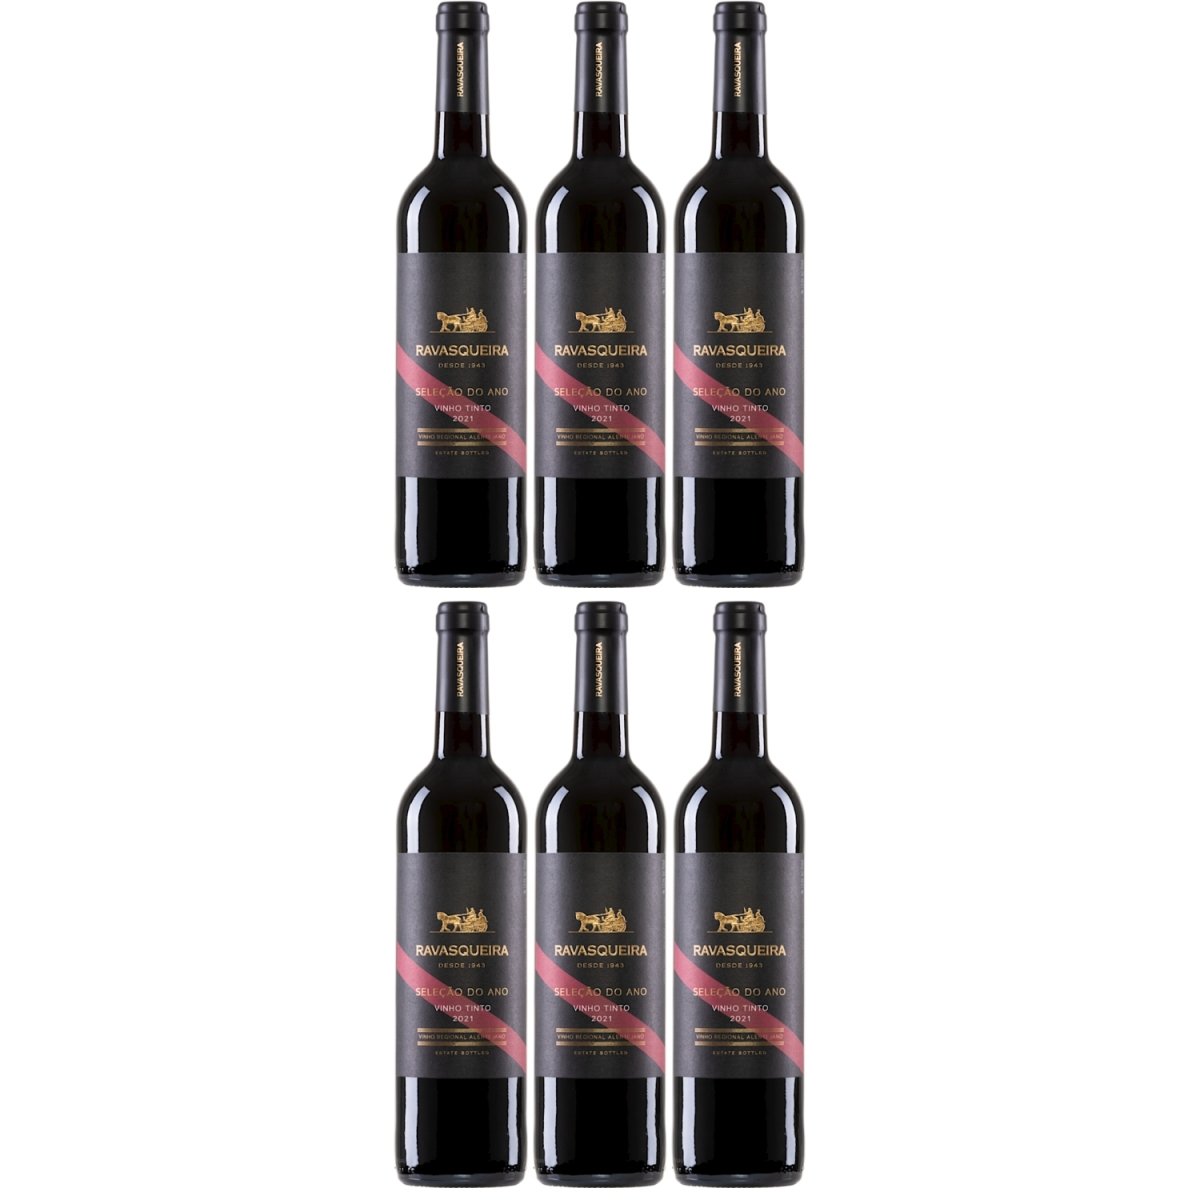 Monte da Ravasqueira Seleção do Ano Tinto Rotwein Wein trocken Portugal (6 Flaschen) - Versanel -